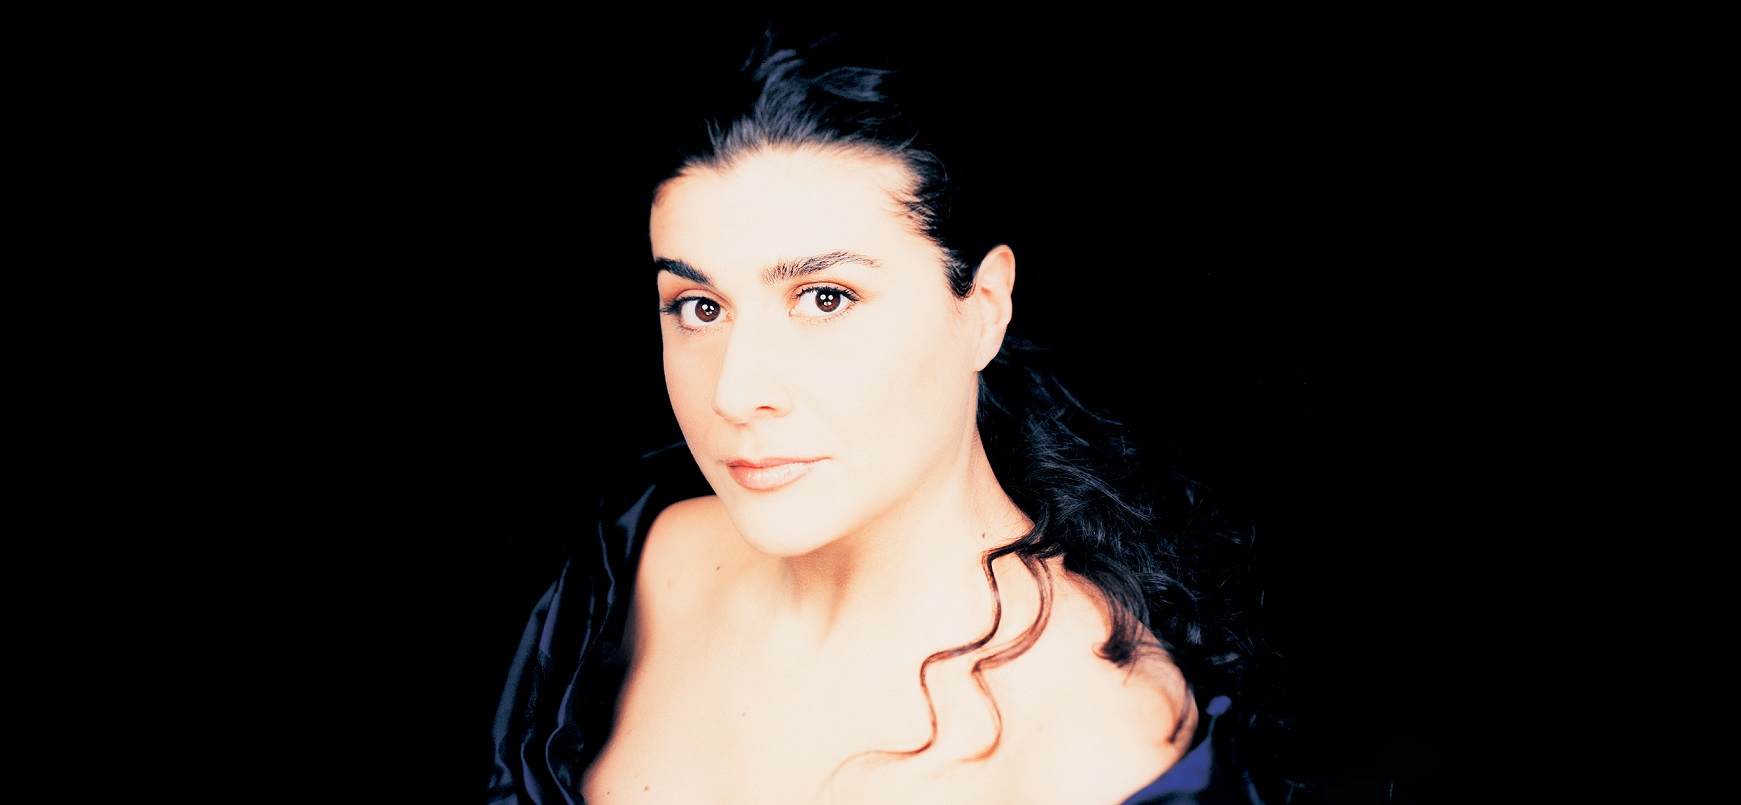 Portraitaufnahme der Sängerin Cecilia Bartoli vor einem schwarzen Hintergrund. Sie schaut direkt in die Kamera.